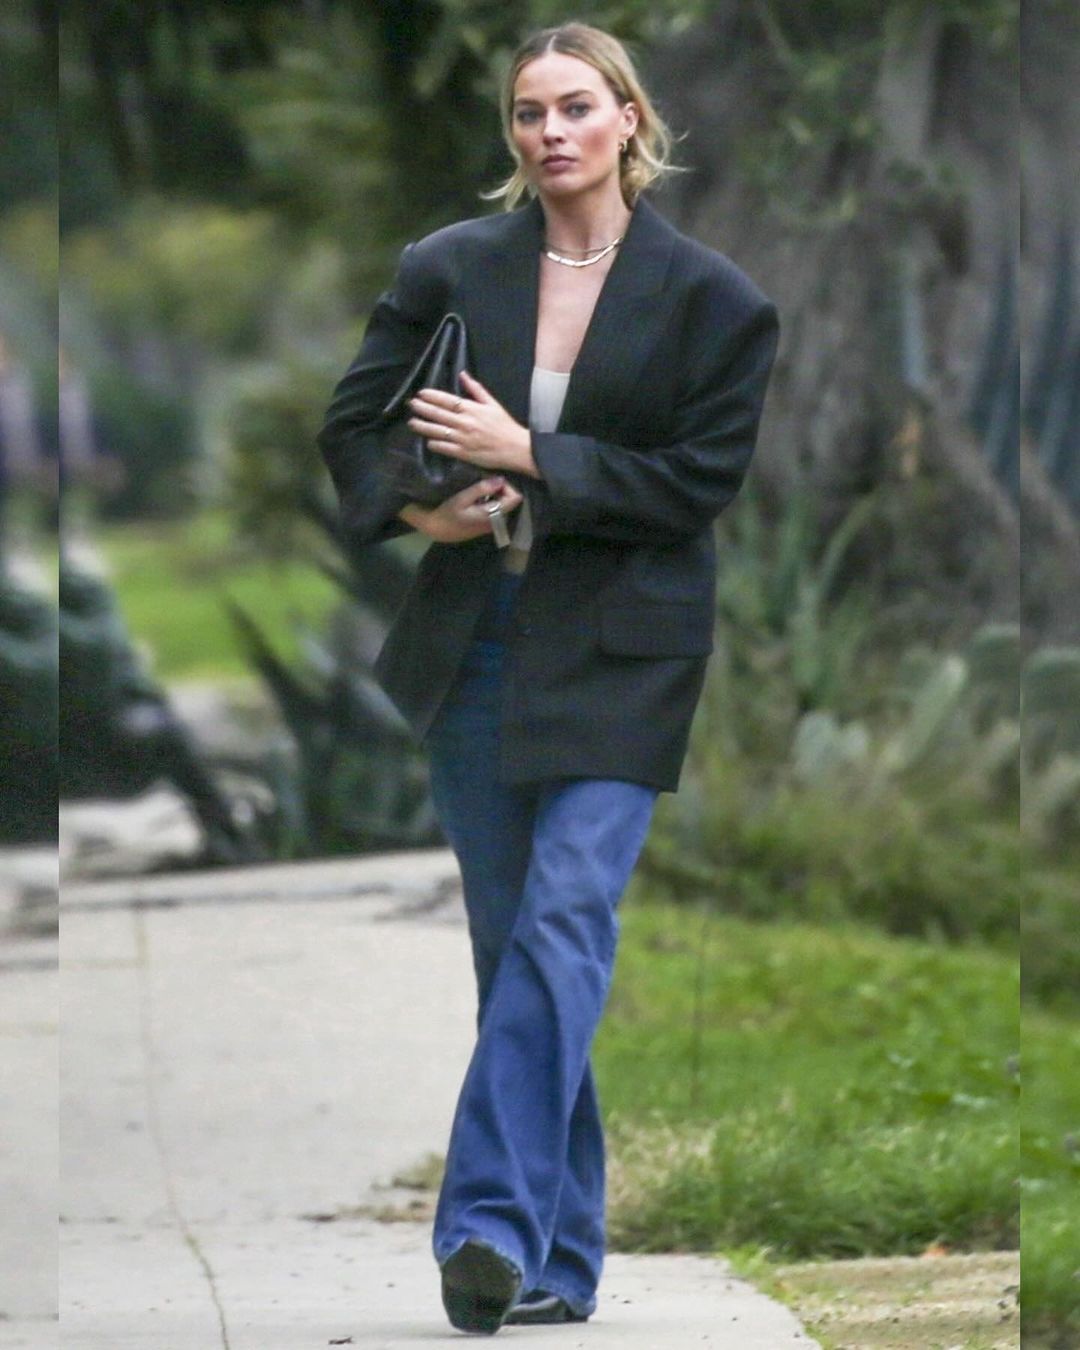 Η Margot Robbie συνδυάζει τις 2 mega τάσεις της σεζόν: Το oversized blazer και τη supersized τσάντα